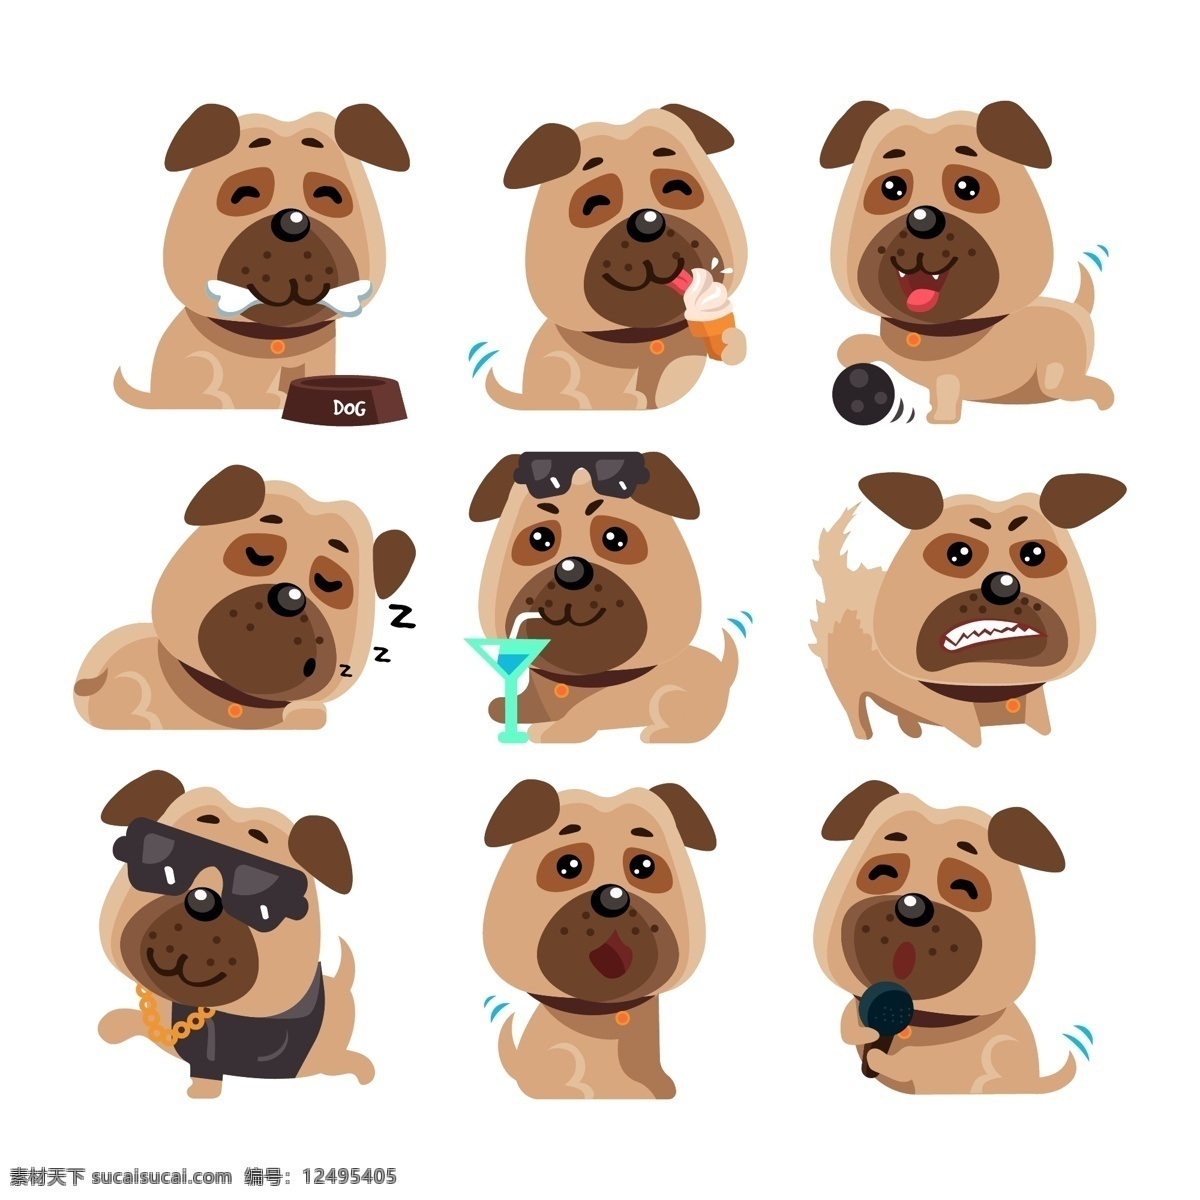 表情 动物 狗 哈巴狗 卡通 卡通狗 可爱 可爱宠物 犬 手绘 语言 有趣